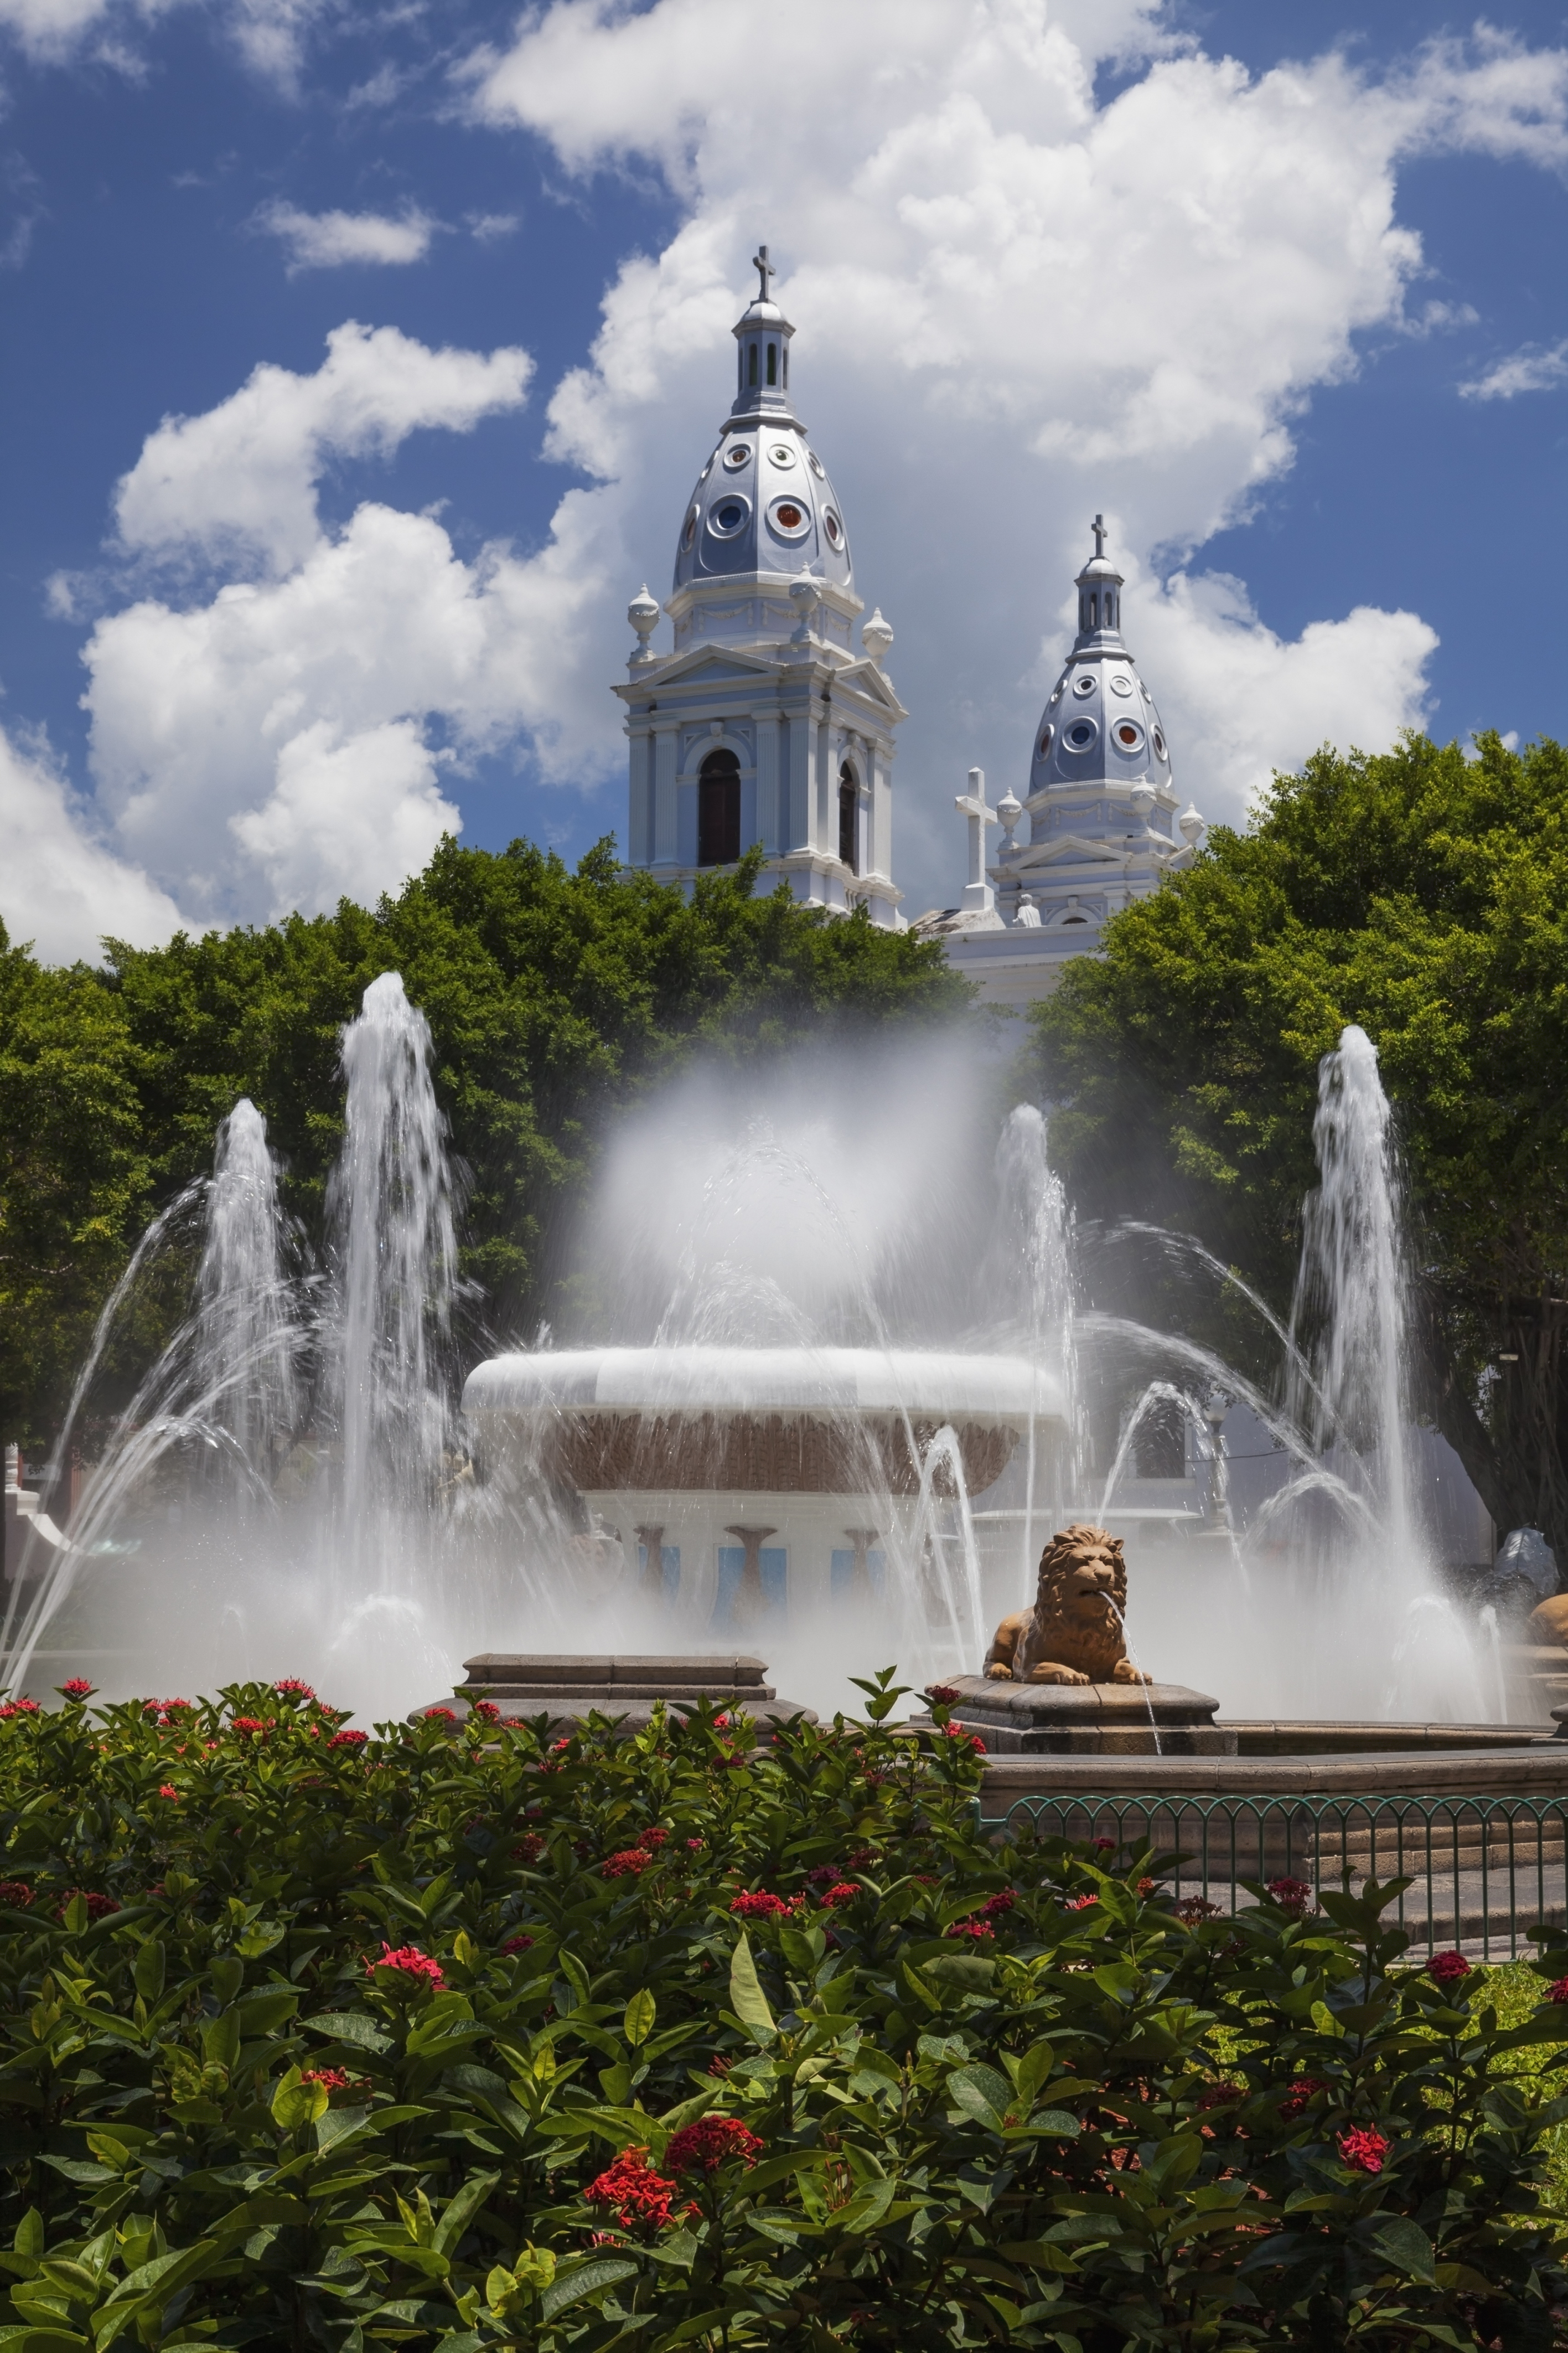 Plaza Las Delicias | Ponce, Puerto Rico Attractions - Lonely Planet